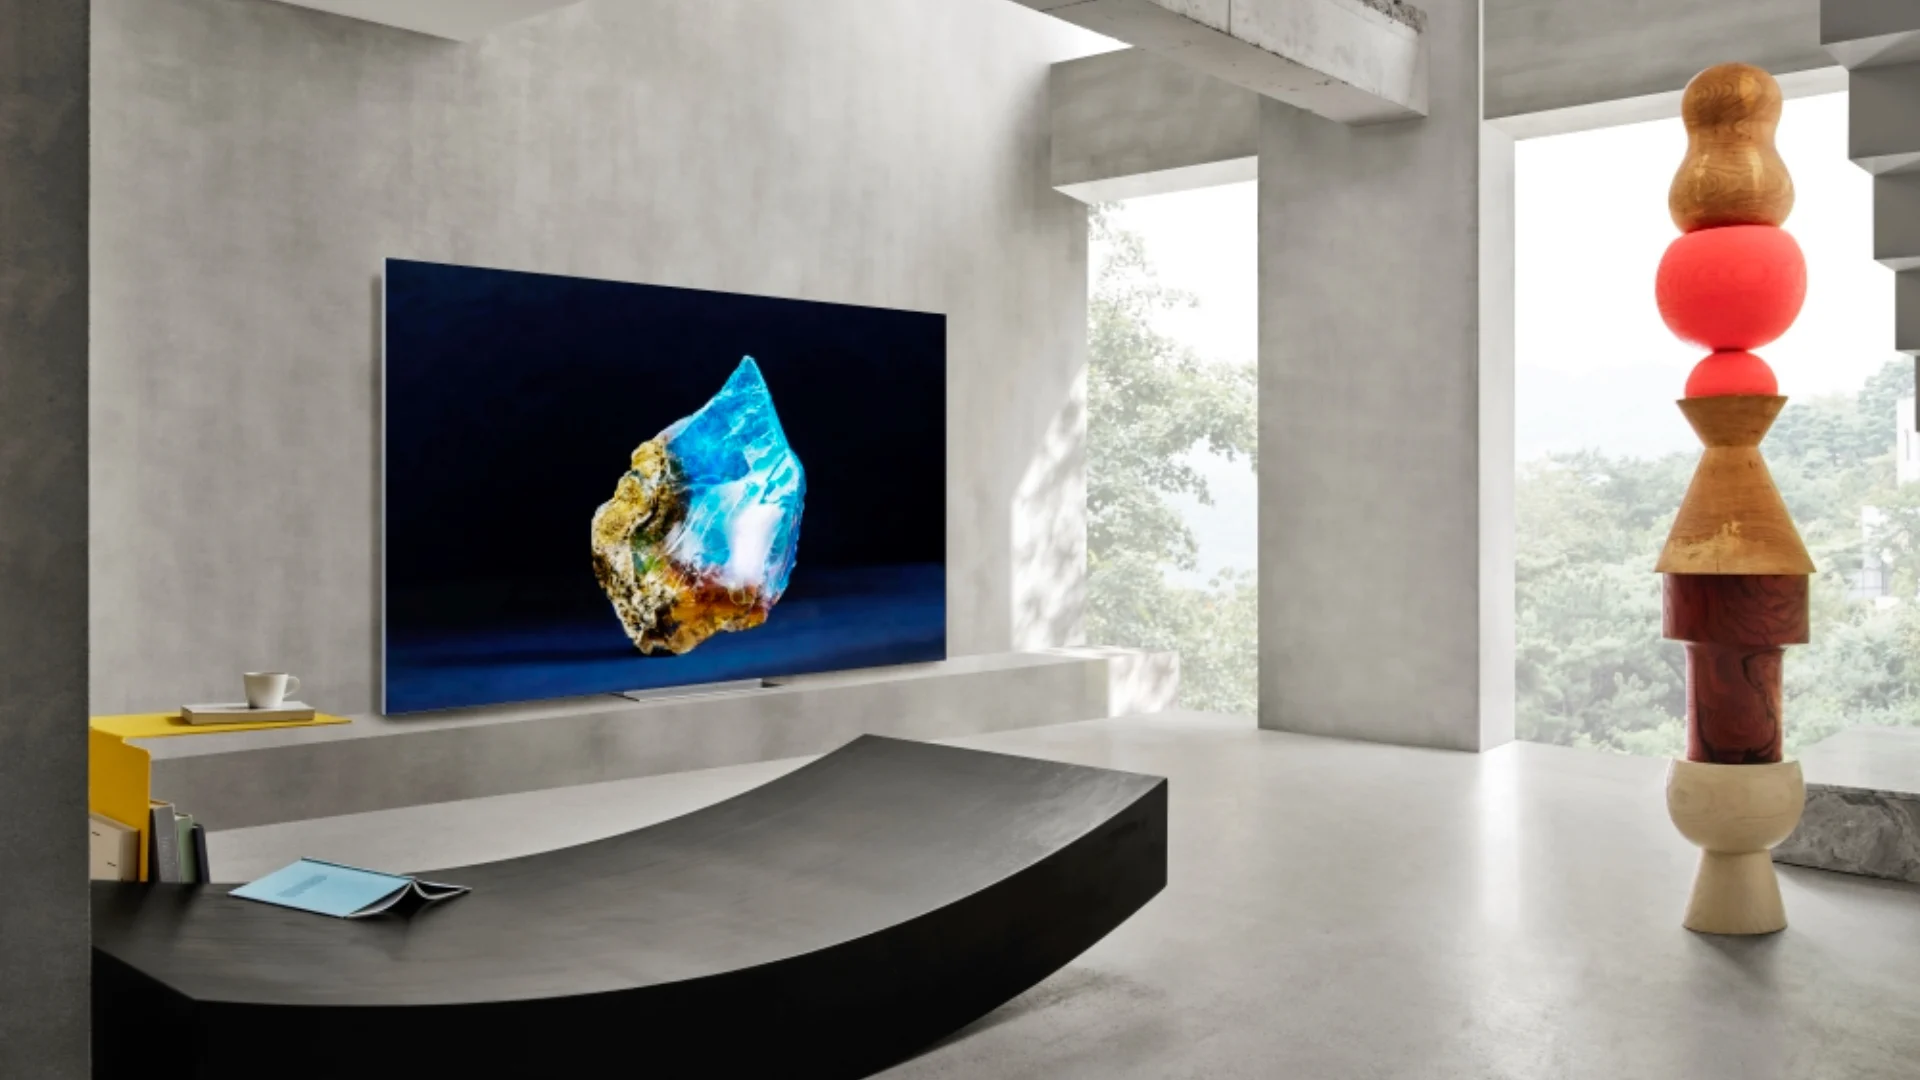 Samsung annonce des téléviseurs Micro LED jusqu'à 140" de diagonale, une luminosité de 4000 nits et une fréquence d'images de 240 Hz